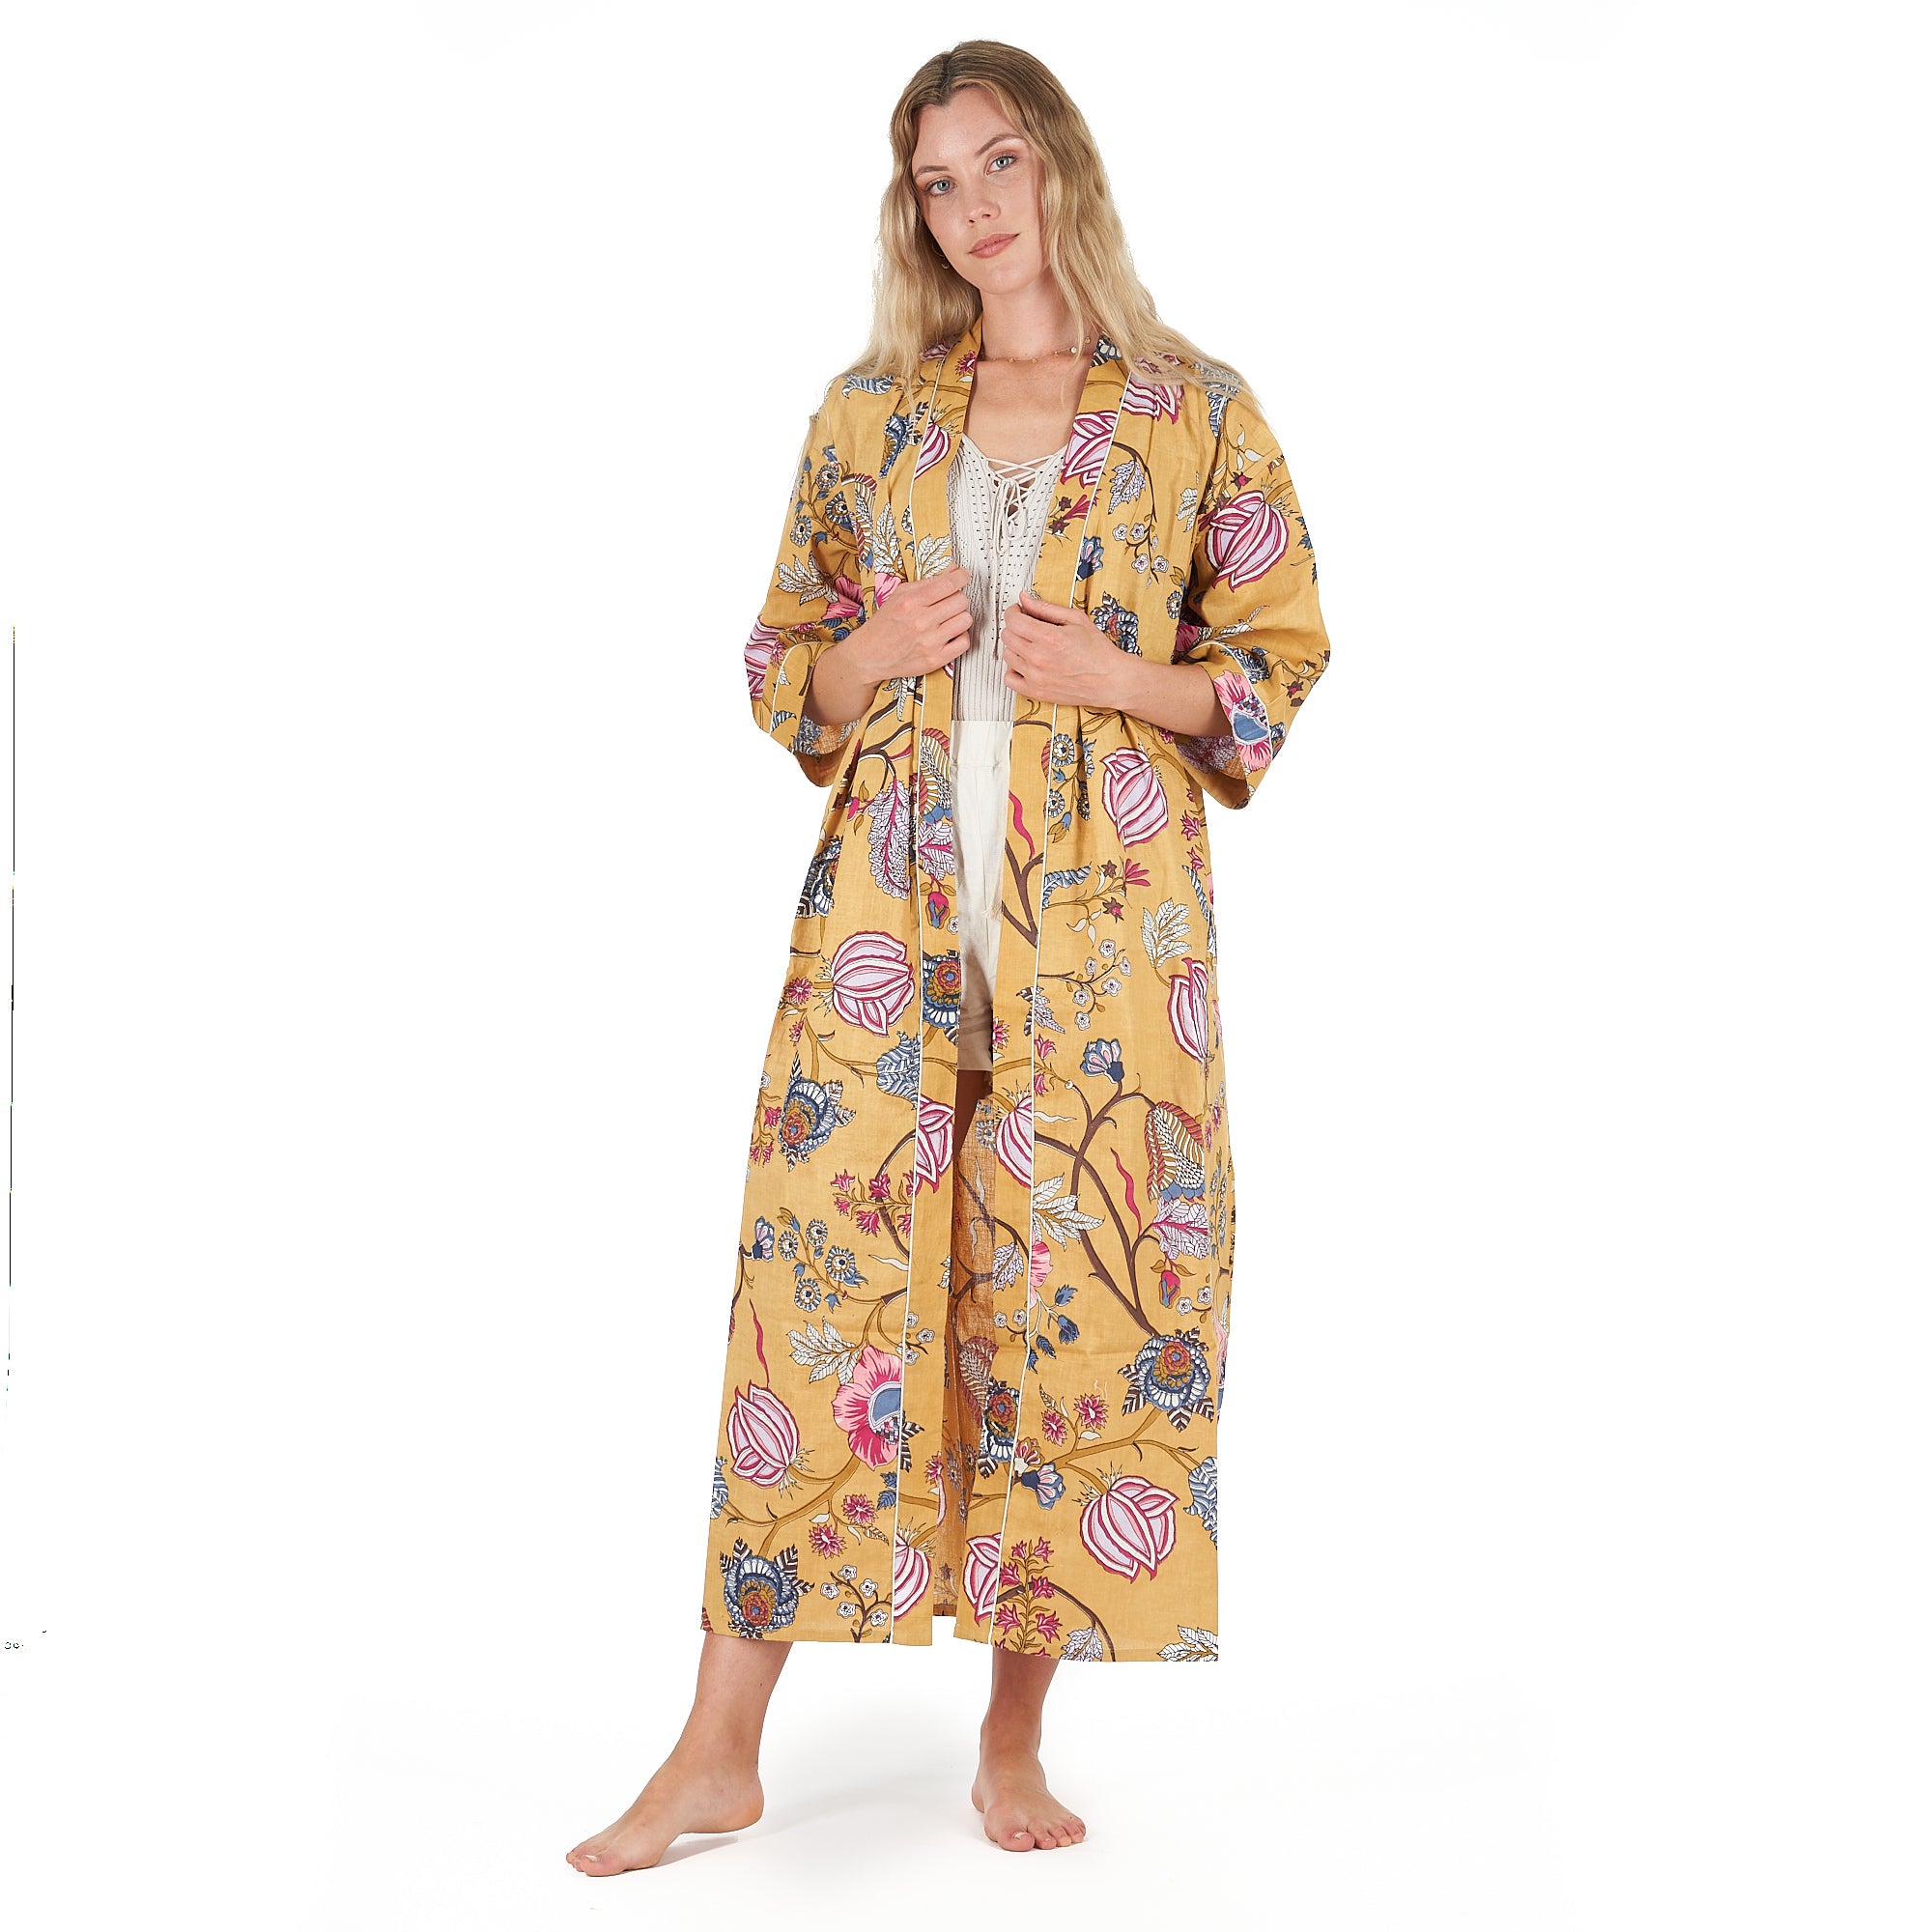 'Yellow Rendezvous' 100% Cotton Kimono Robe